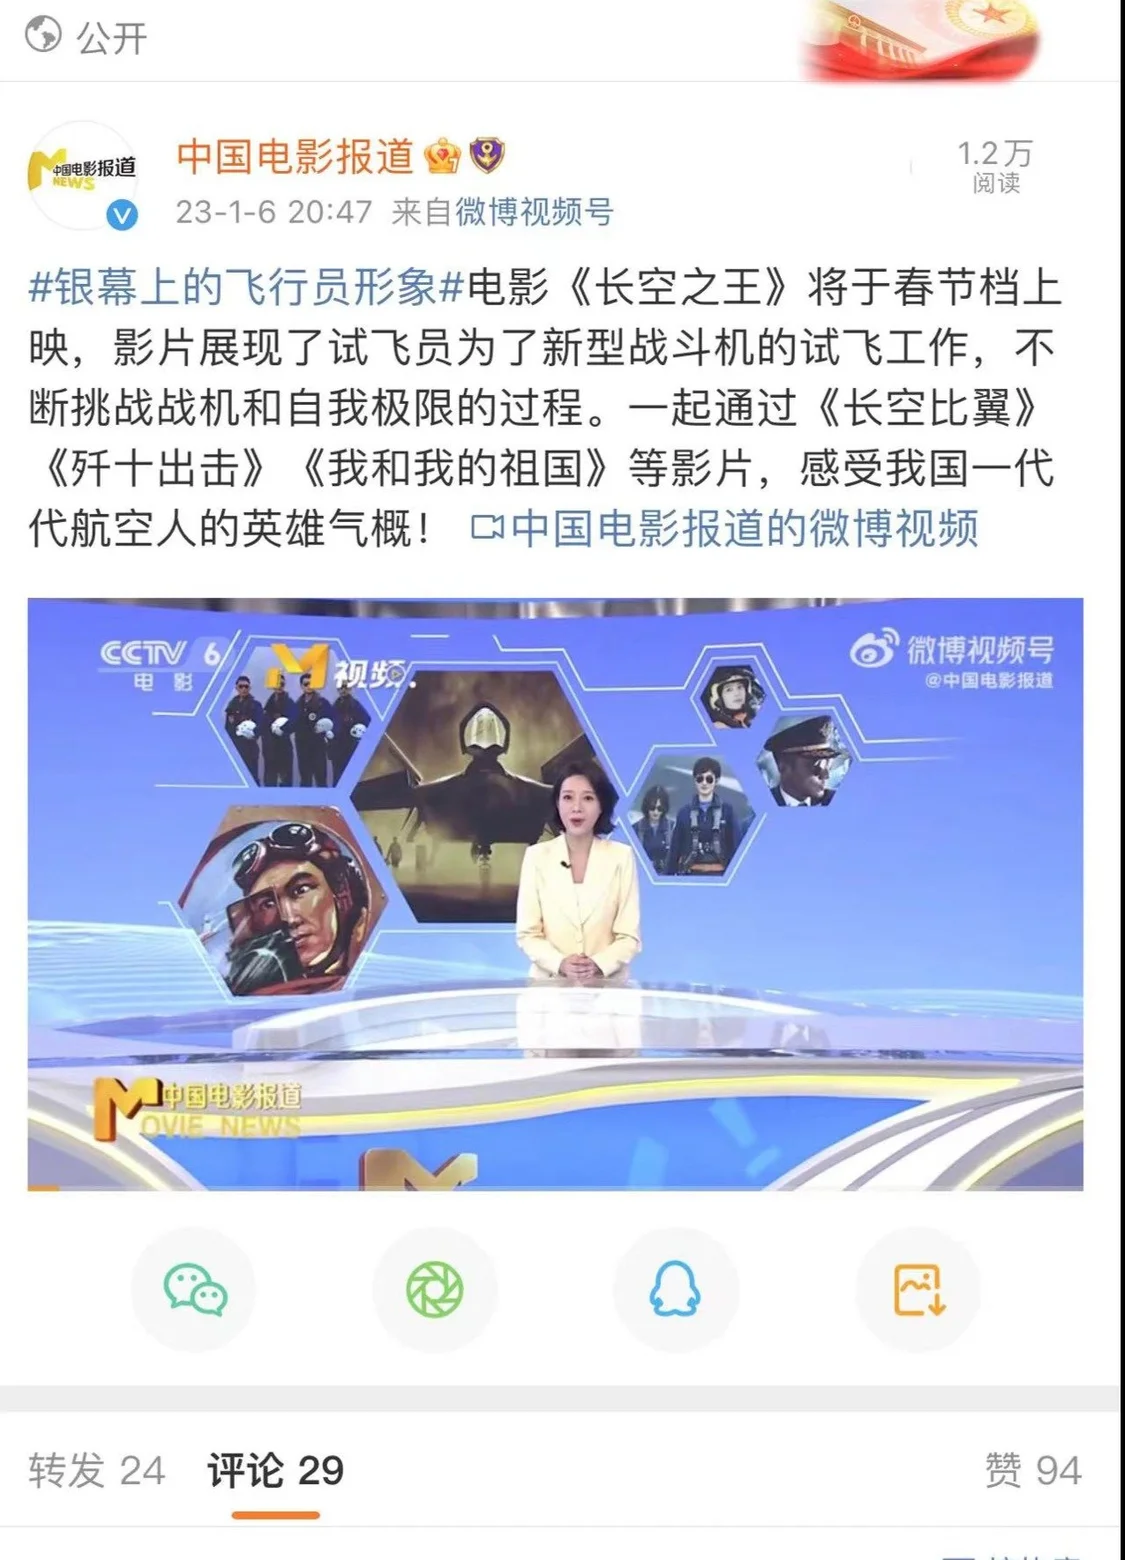 中国电影报道发文称 《长空之王》将于春节档上映 随后删除该内容